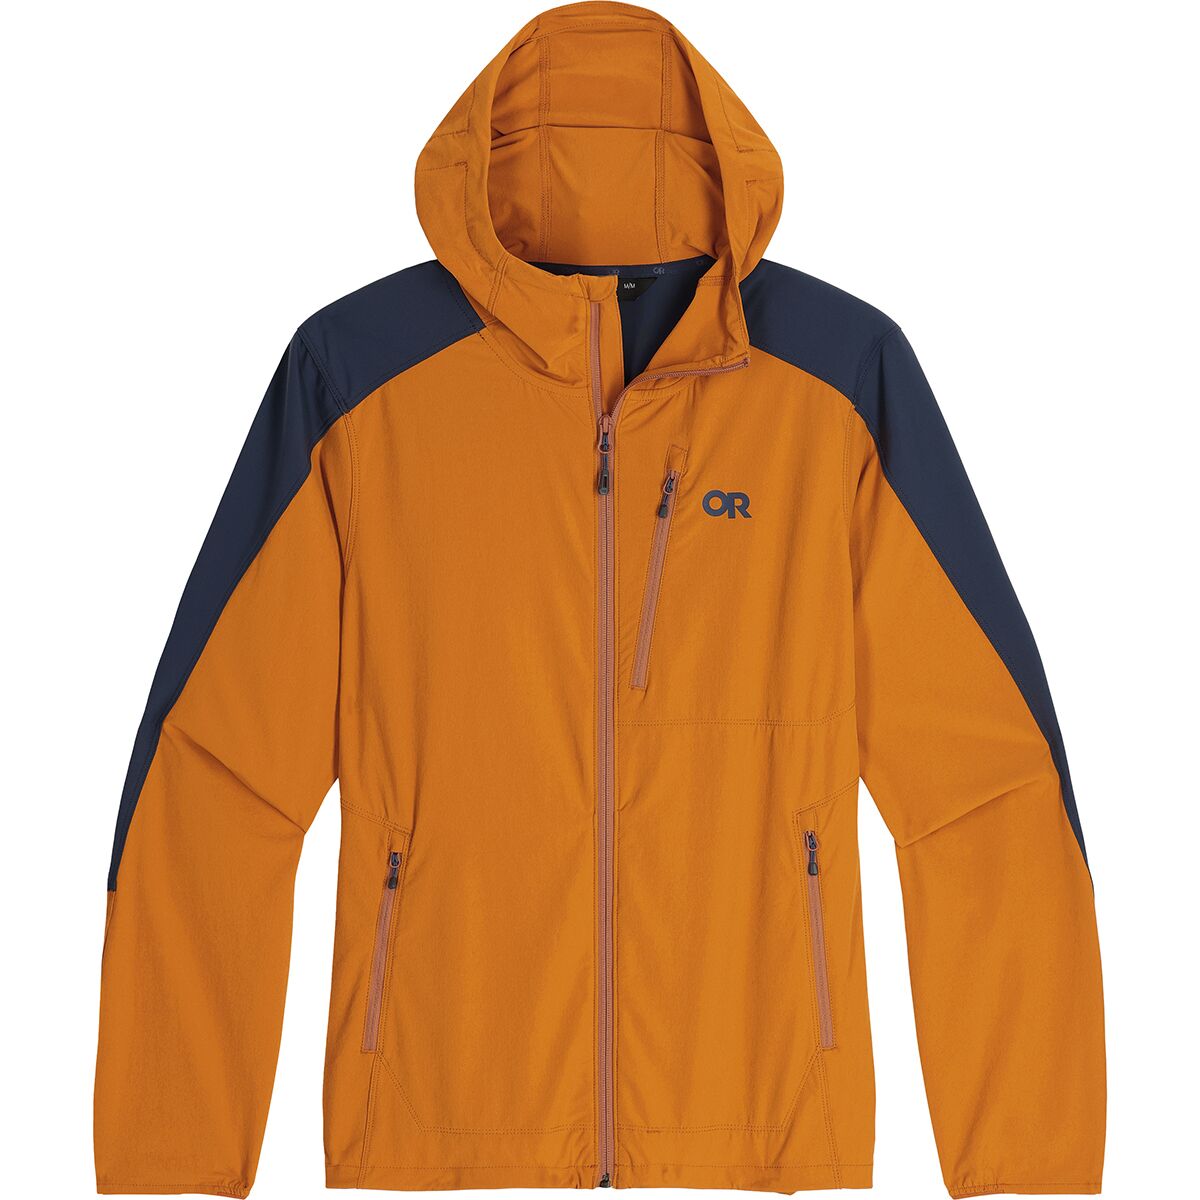 Outdoor Research Ferrosi Hooded Jacket - Men's | eBay